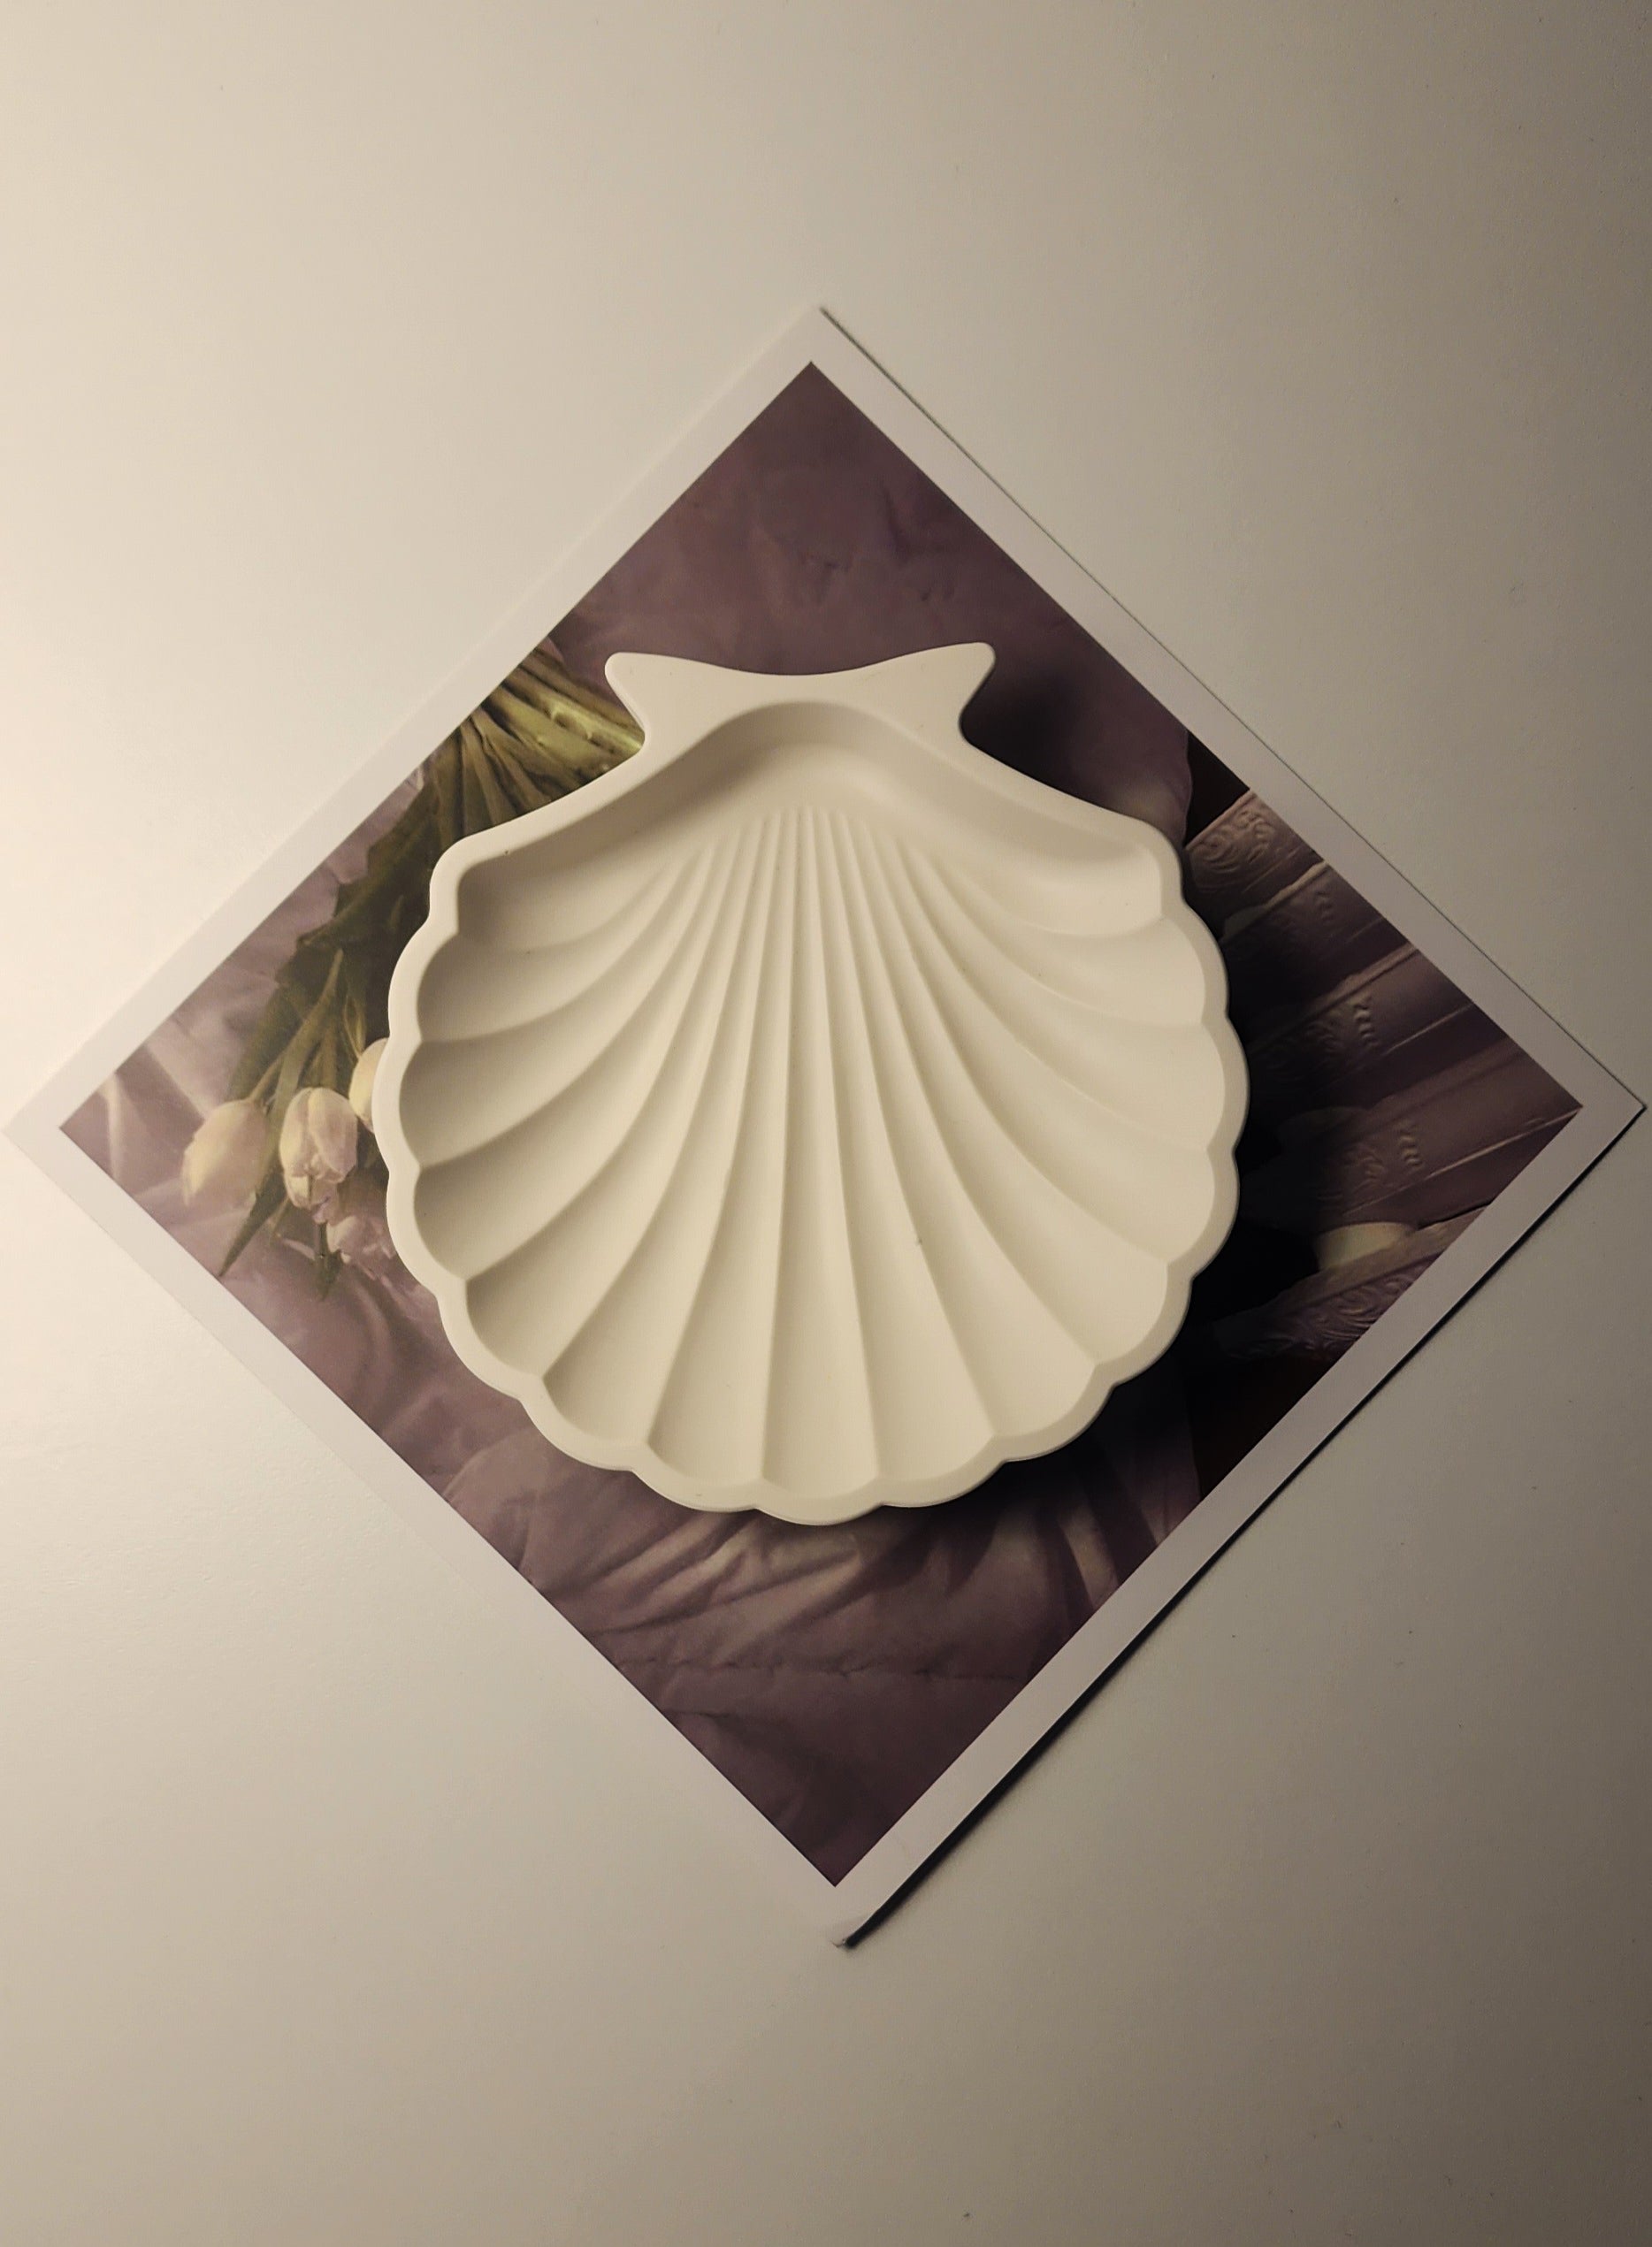 Shell Handmade Object Tray